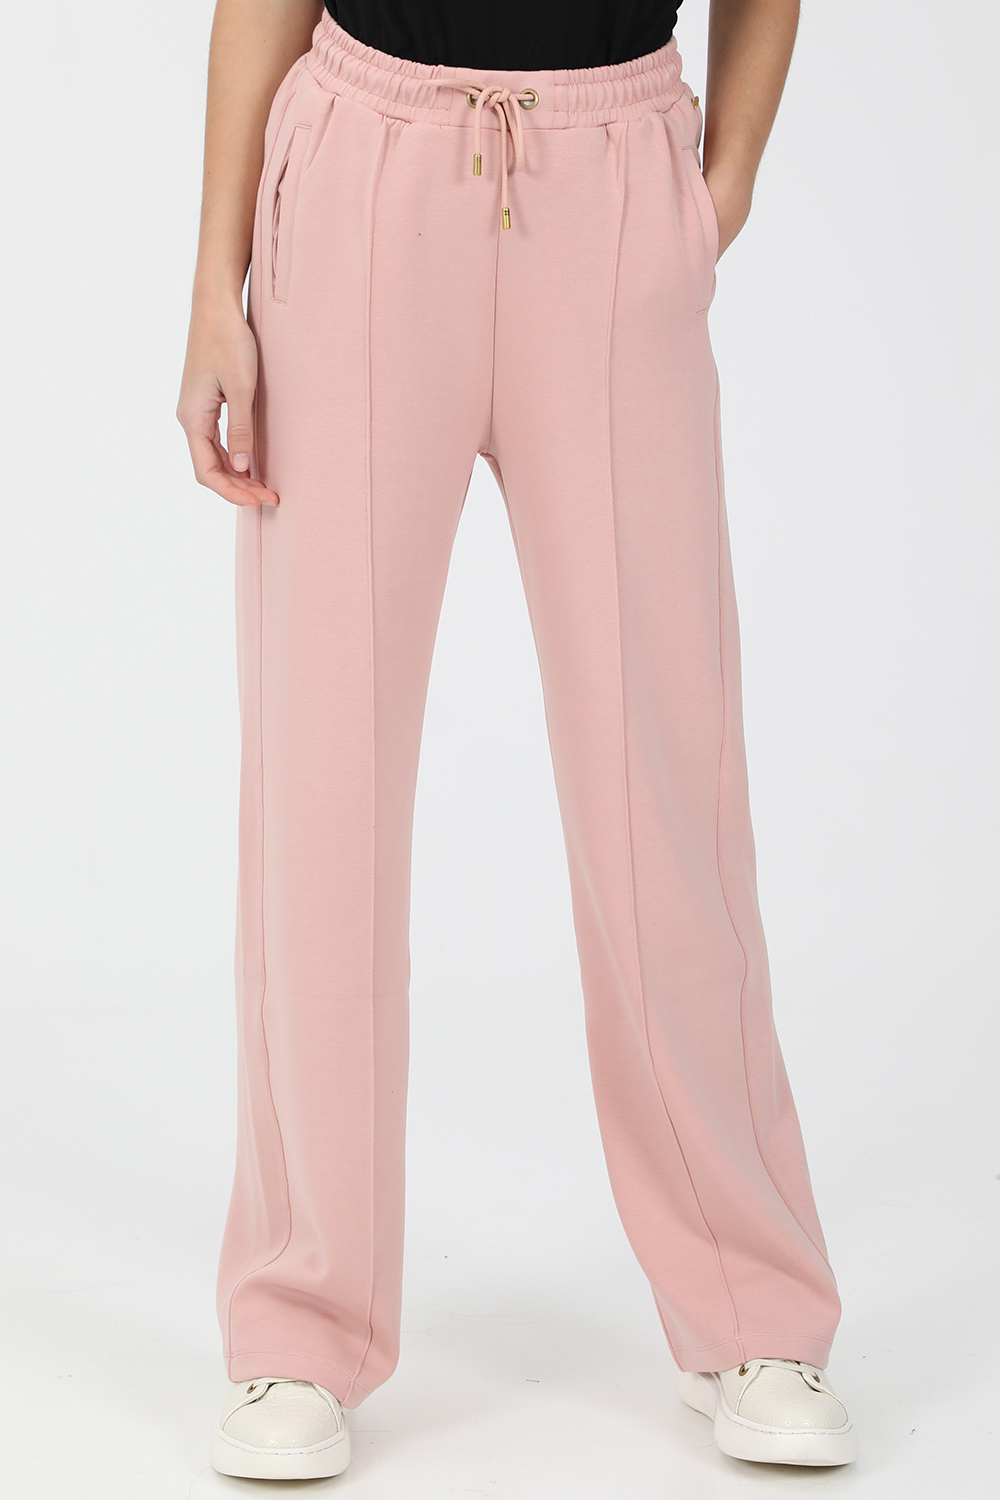 Γυναικεία/Ρούχα/Παντελόνια/Φόρμες SCOTCH & SODA - Γυναικείο παντελόνι φόρμας SCOTCH & SODA Soft sweat pants ροζ